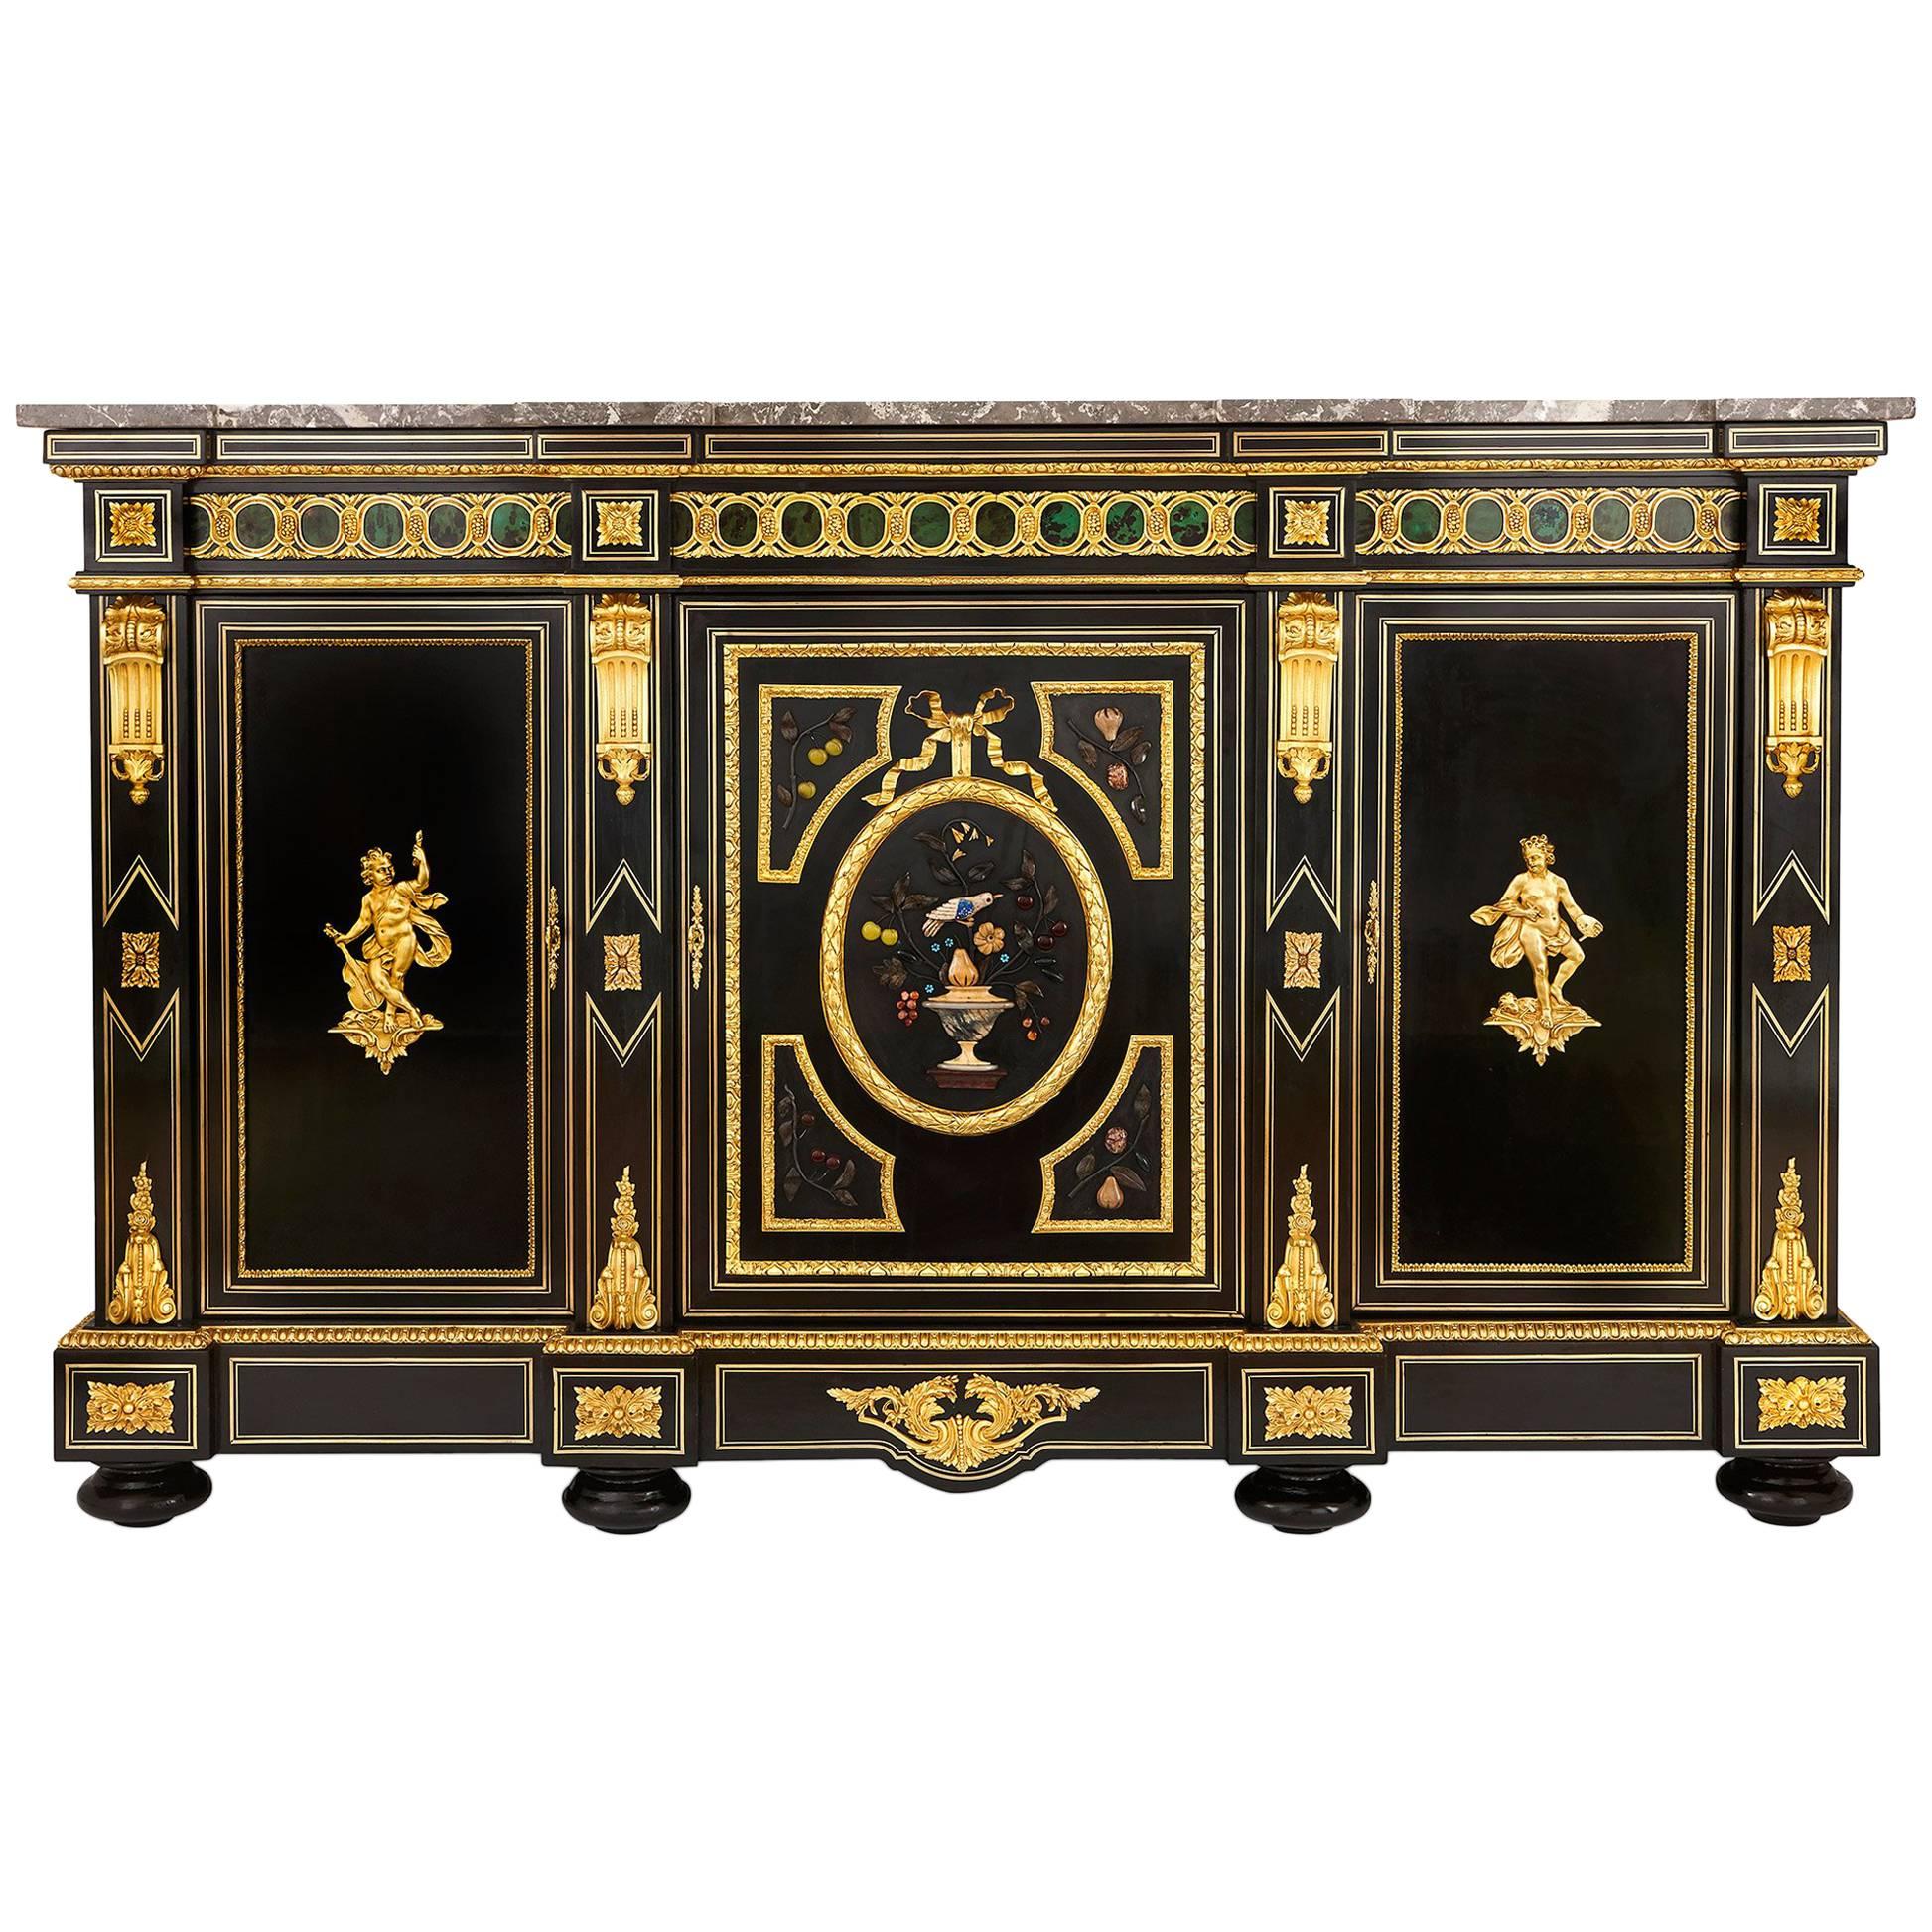 Napoleon III Period Marble, Hardstone, Ebonized Wood and Ormolu-Mounted Cabinet